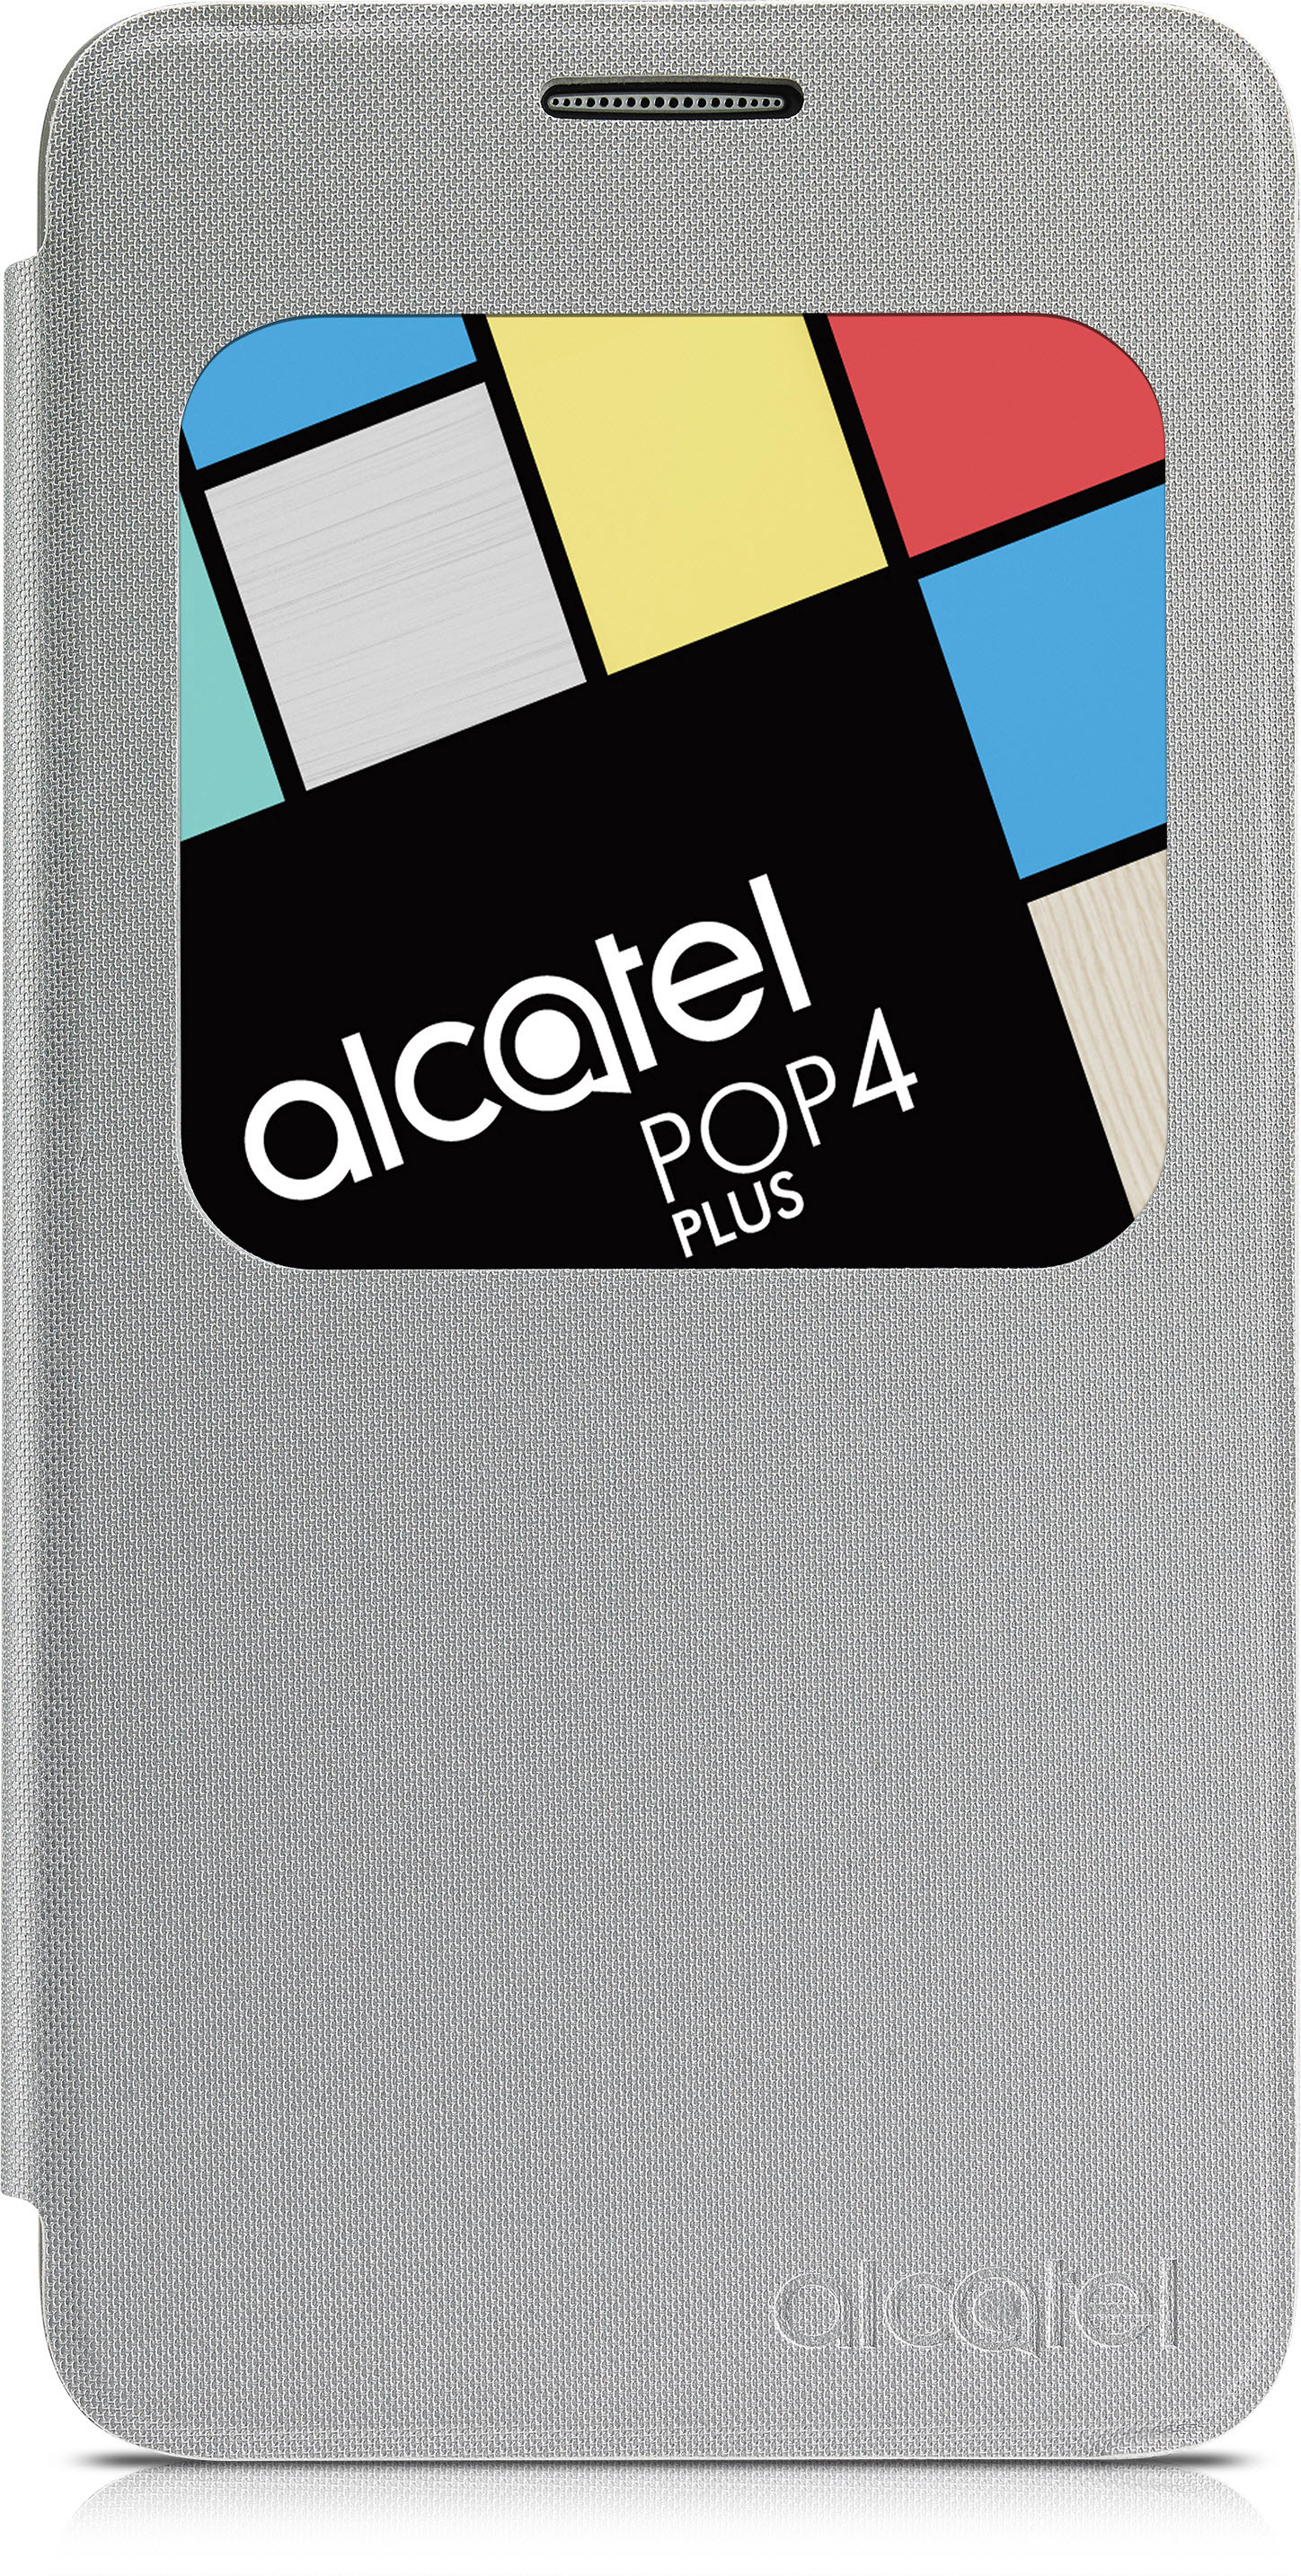 ALCATEL AF5056, Bookcover, Alcatel, POP Silber 4